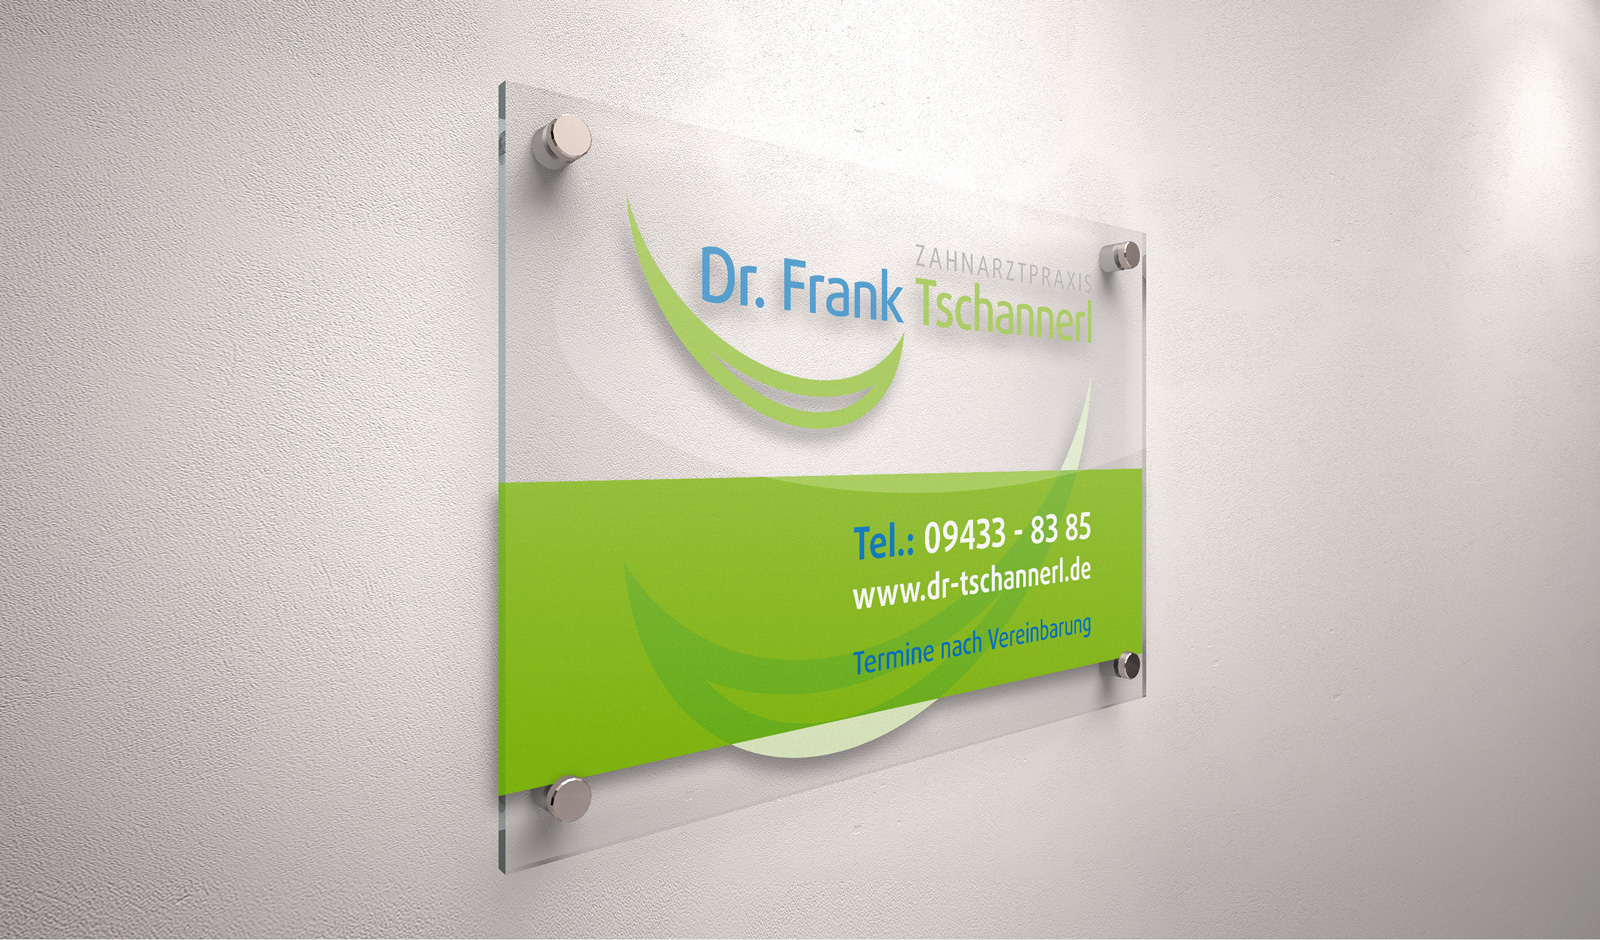 Zahnarztpraxis Dr. Frank Tschannerl in Nabburg, Beschilderung